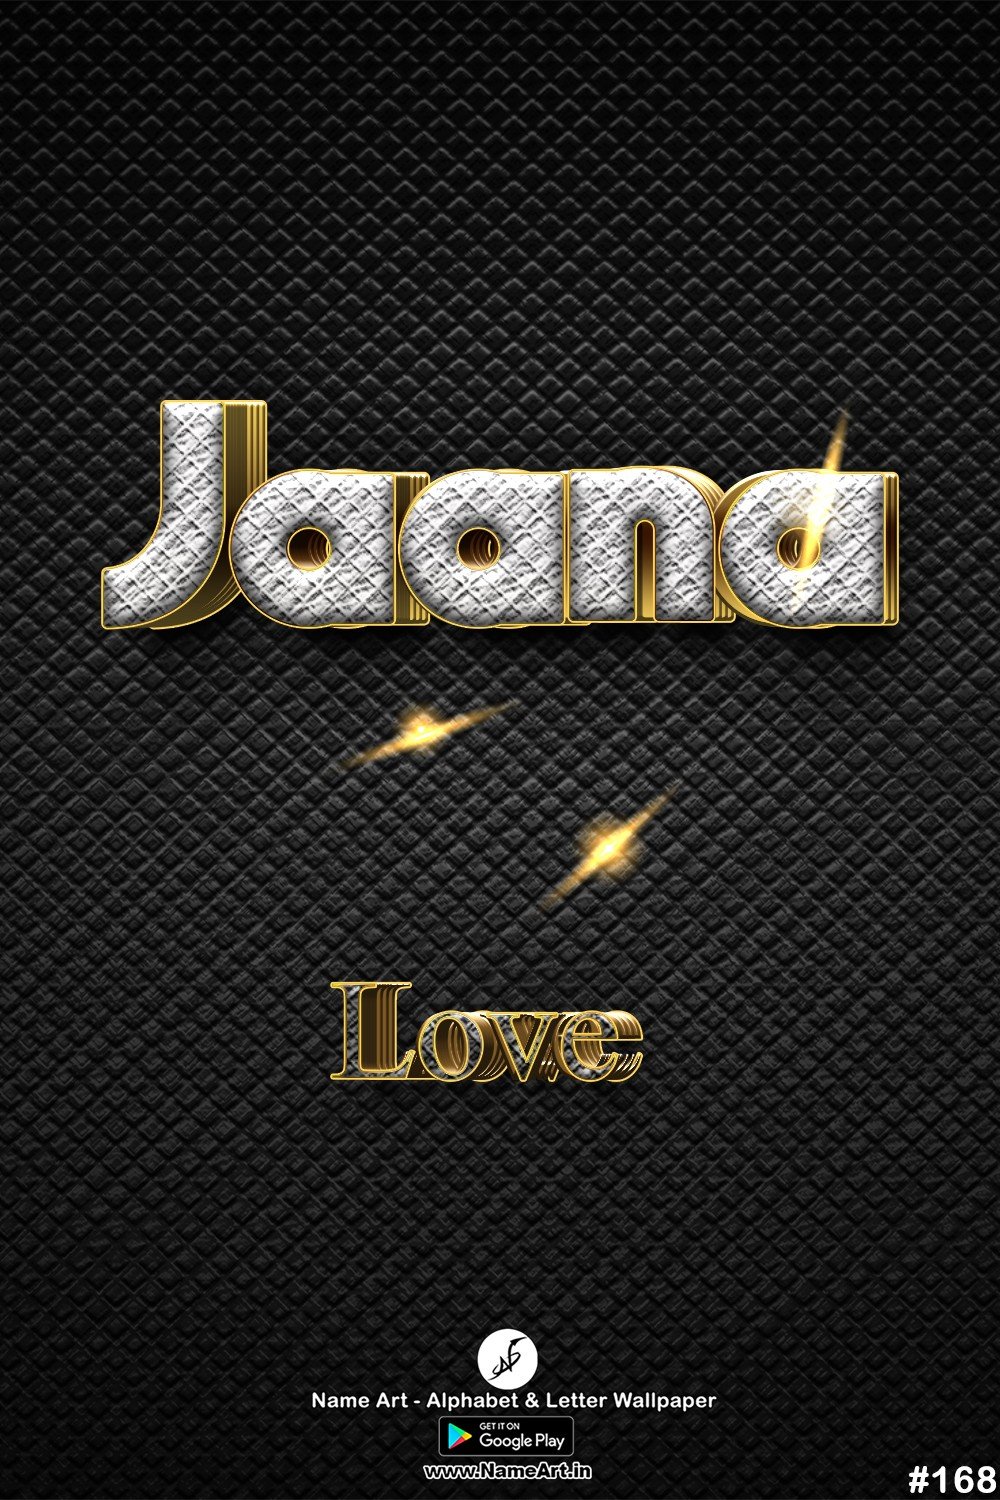 Jaana | Whatsapp Status Jaana | Happy Birthday Jaana !! | New Whatsapp Status Jaana Images |